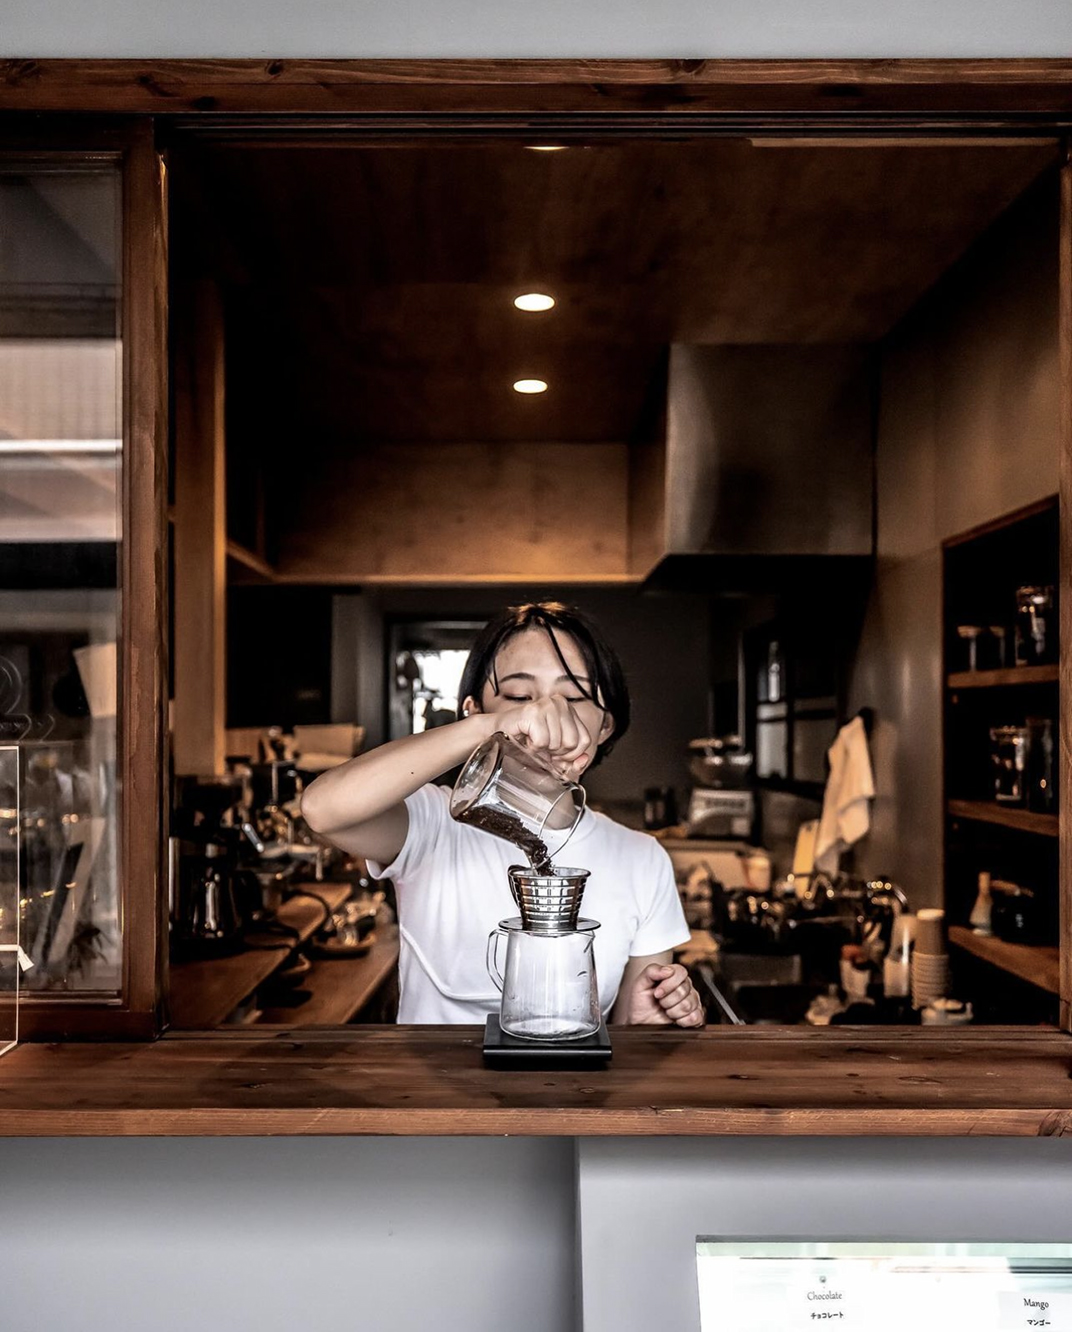 非常松弛感的咖啡店coffeestandwily 日本 深圳 上海 北京 广州 武汉 咖啡店 餐饮商业 logo设计 vi设计 空间设计